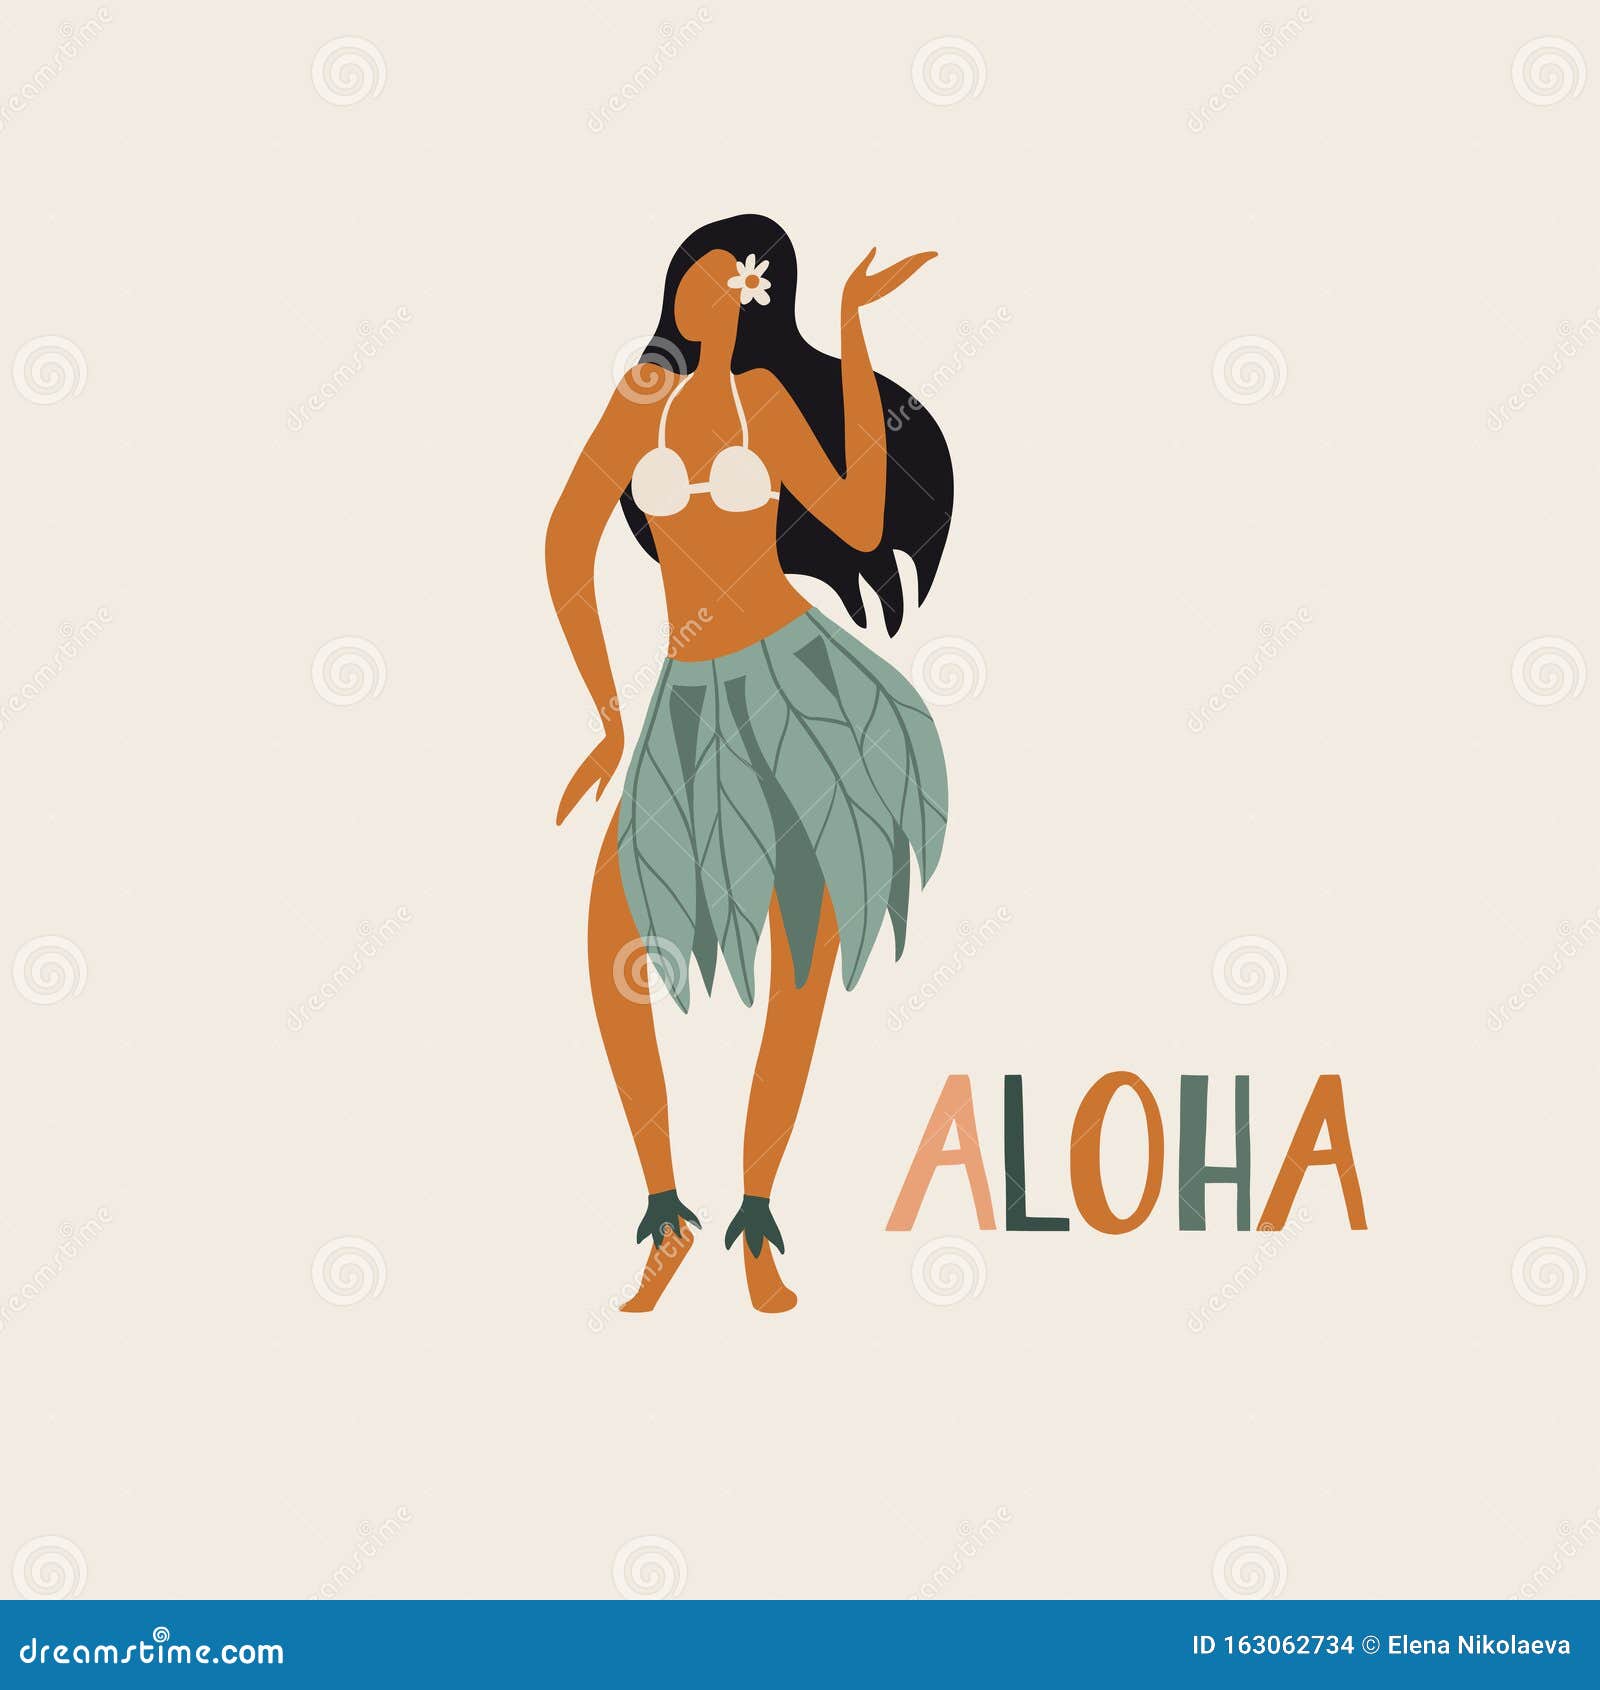 Hawaiian Girl Cartoon Stock Illustrations – 1,021 Hawaiian Girl Cartoon  Stock Illustrations, Vectors & Clipart - Dreamstime